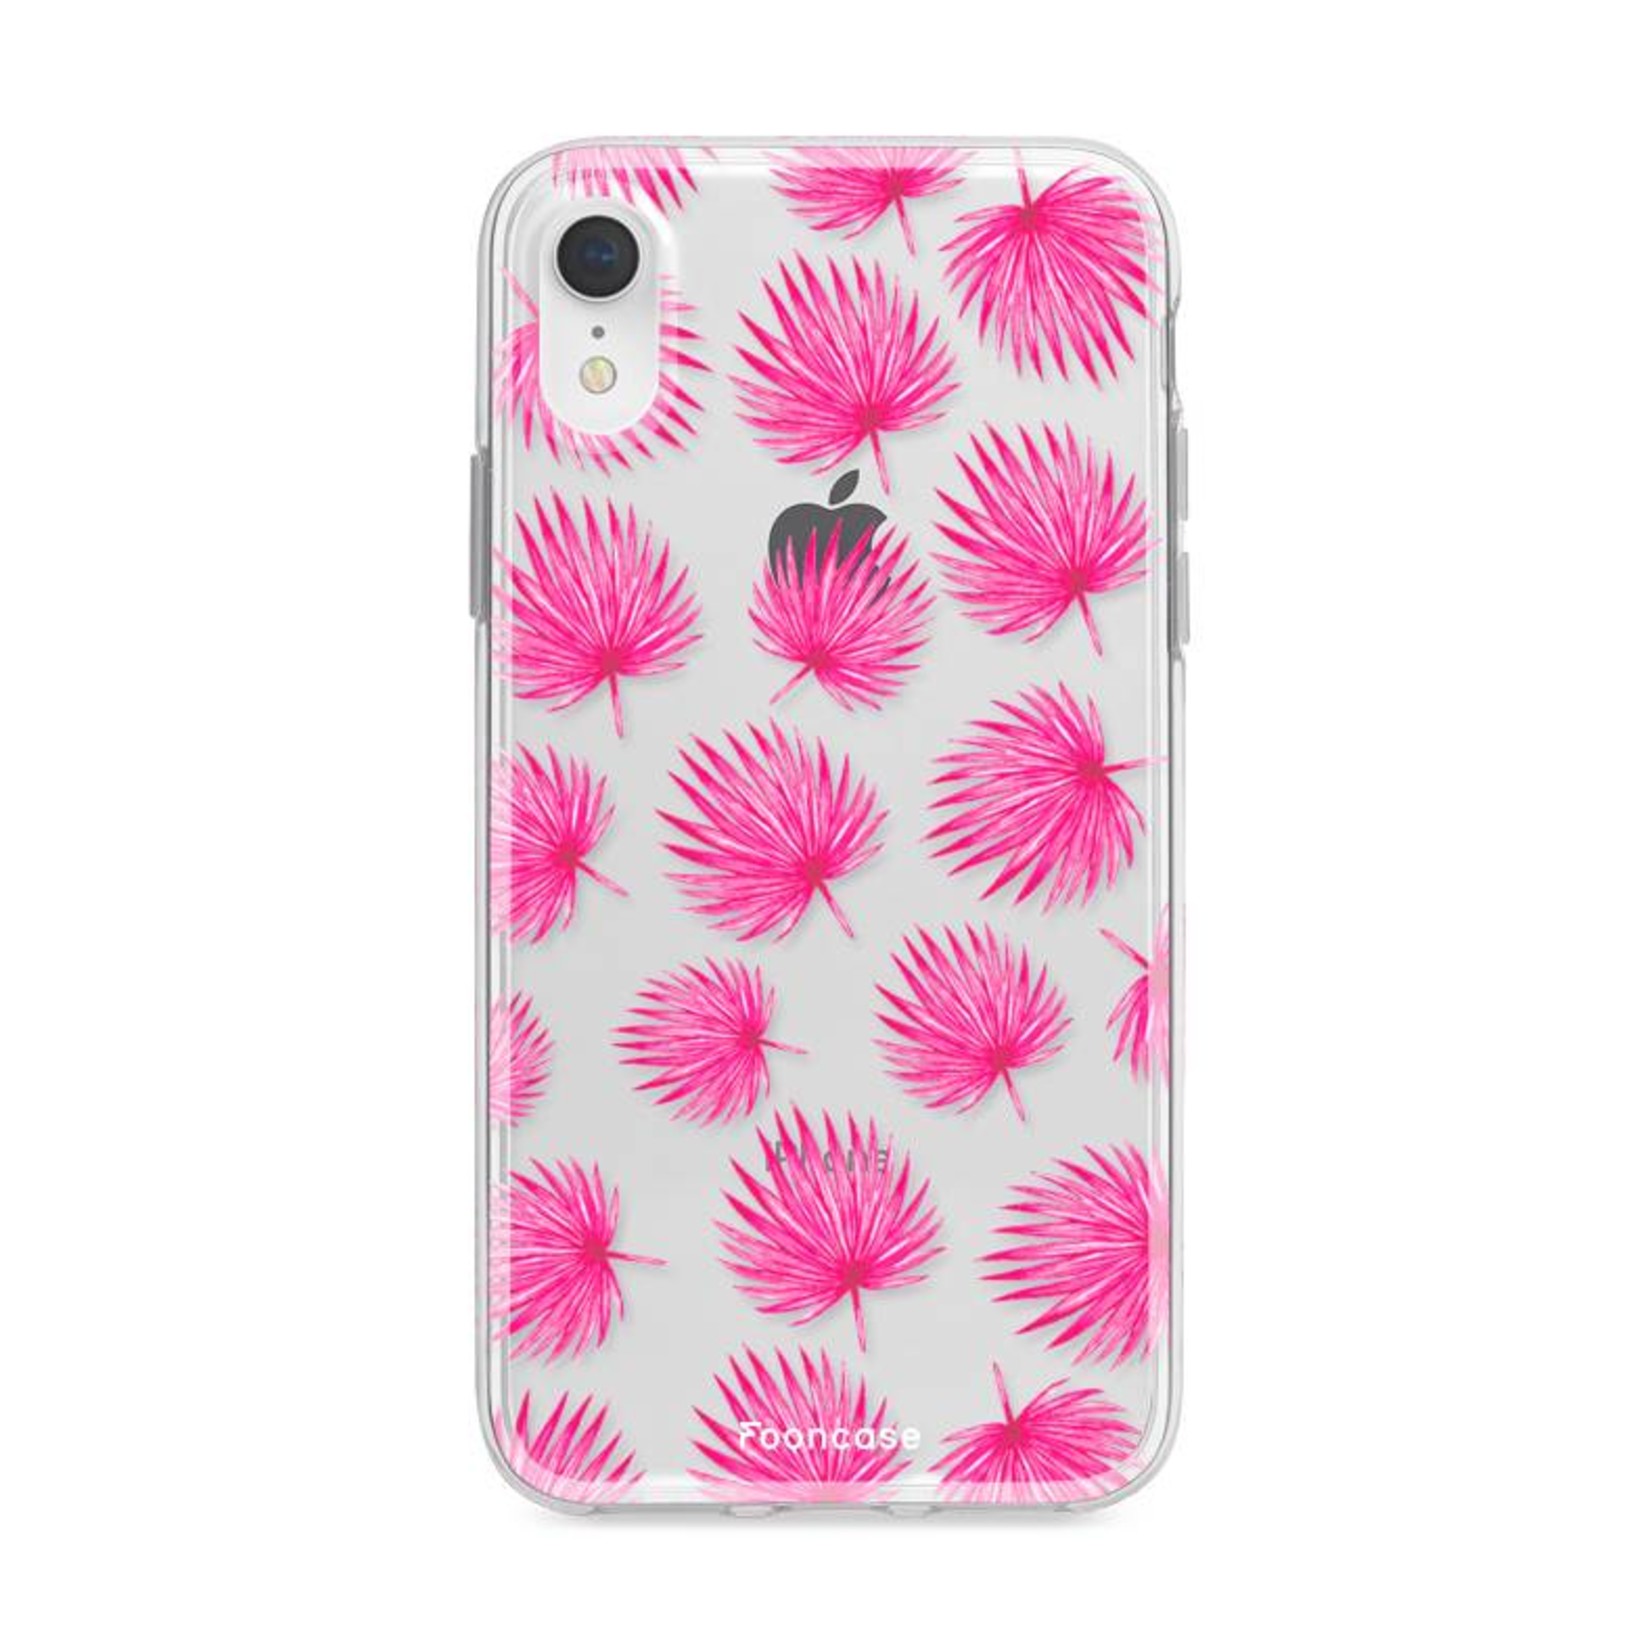 FOONCASE Iphone XR Case - Pink leaves